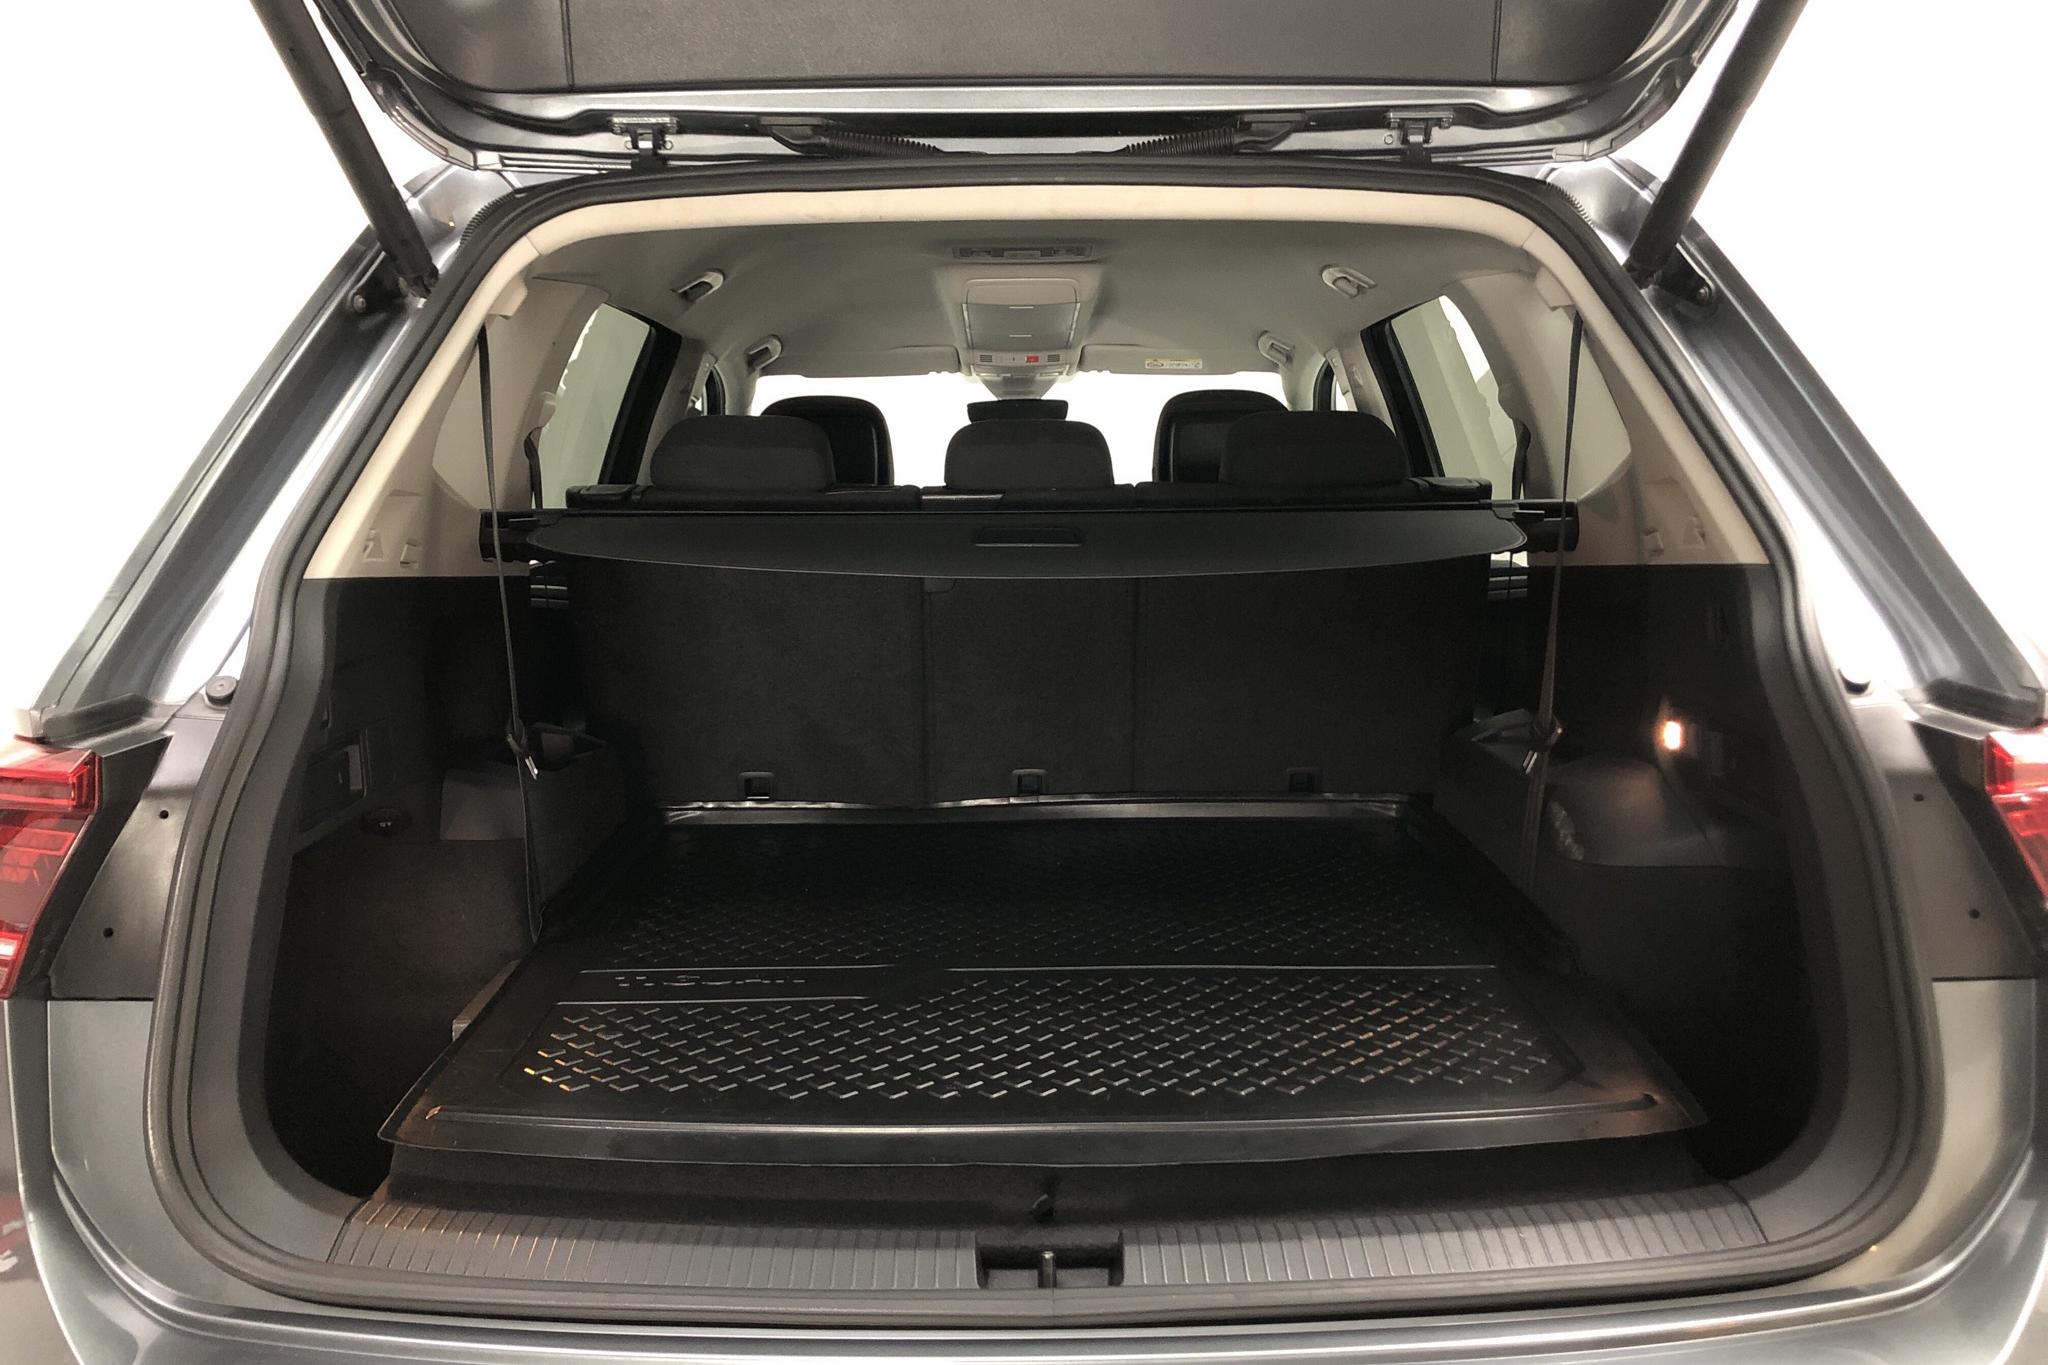 VW Tiguan Allspace 2.0 TDI 4MOTION (190hk) - 149 430 km - Automatic - gray - 2019